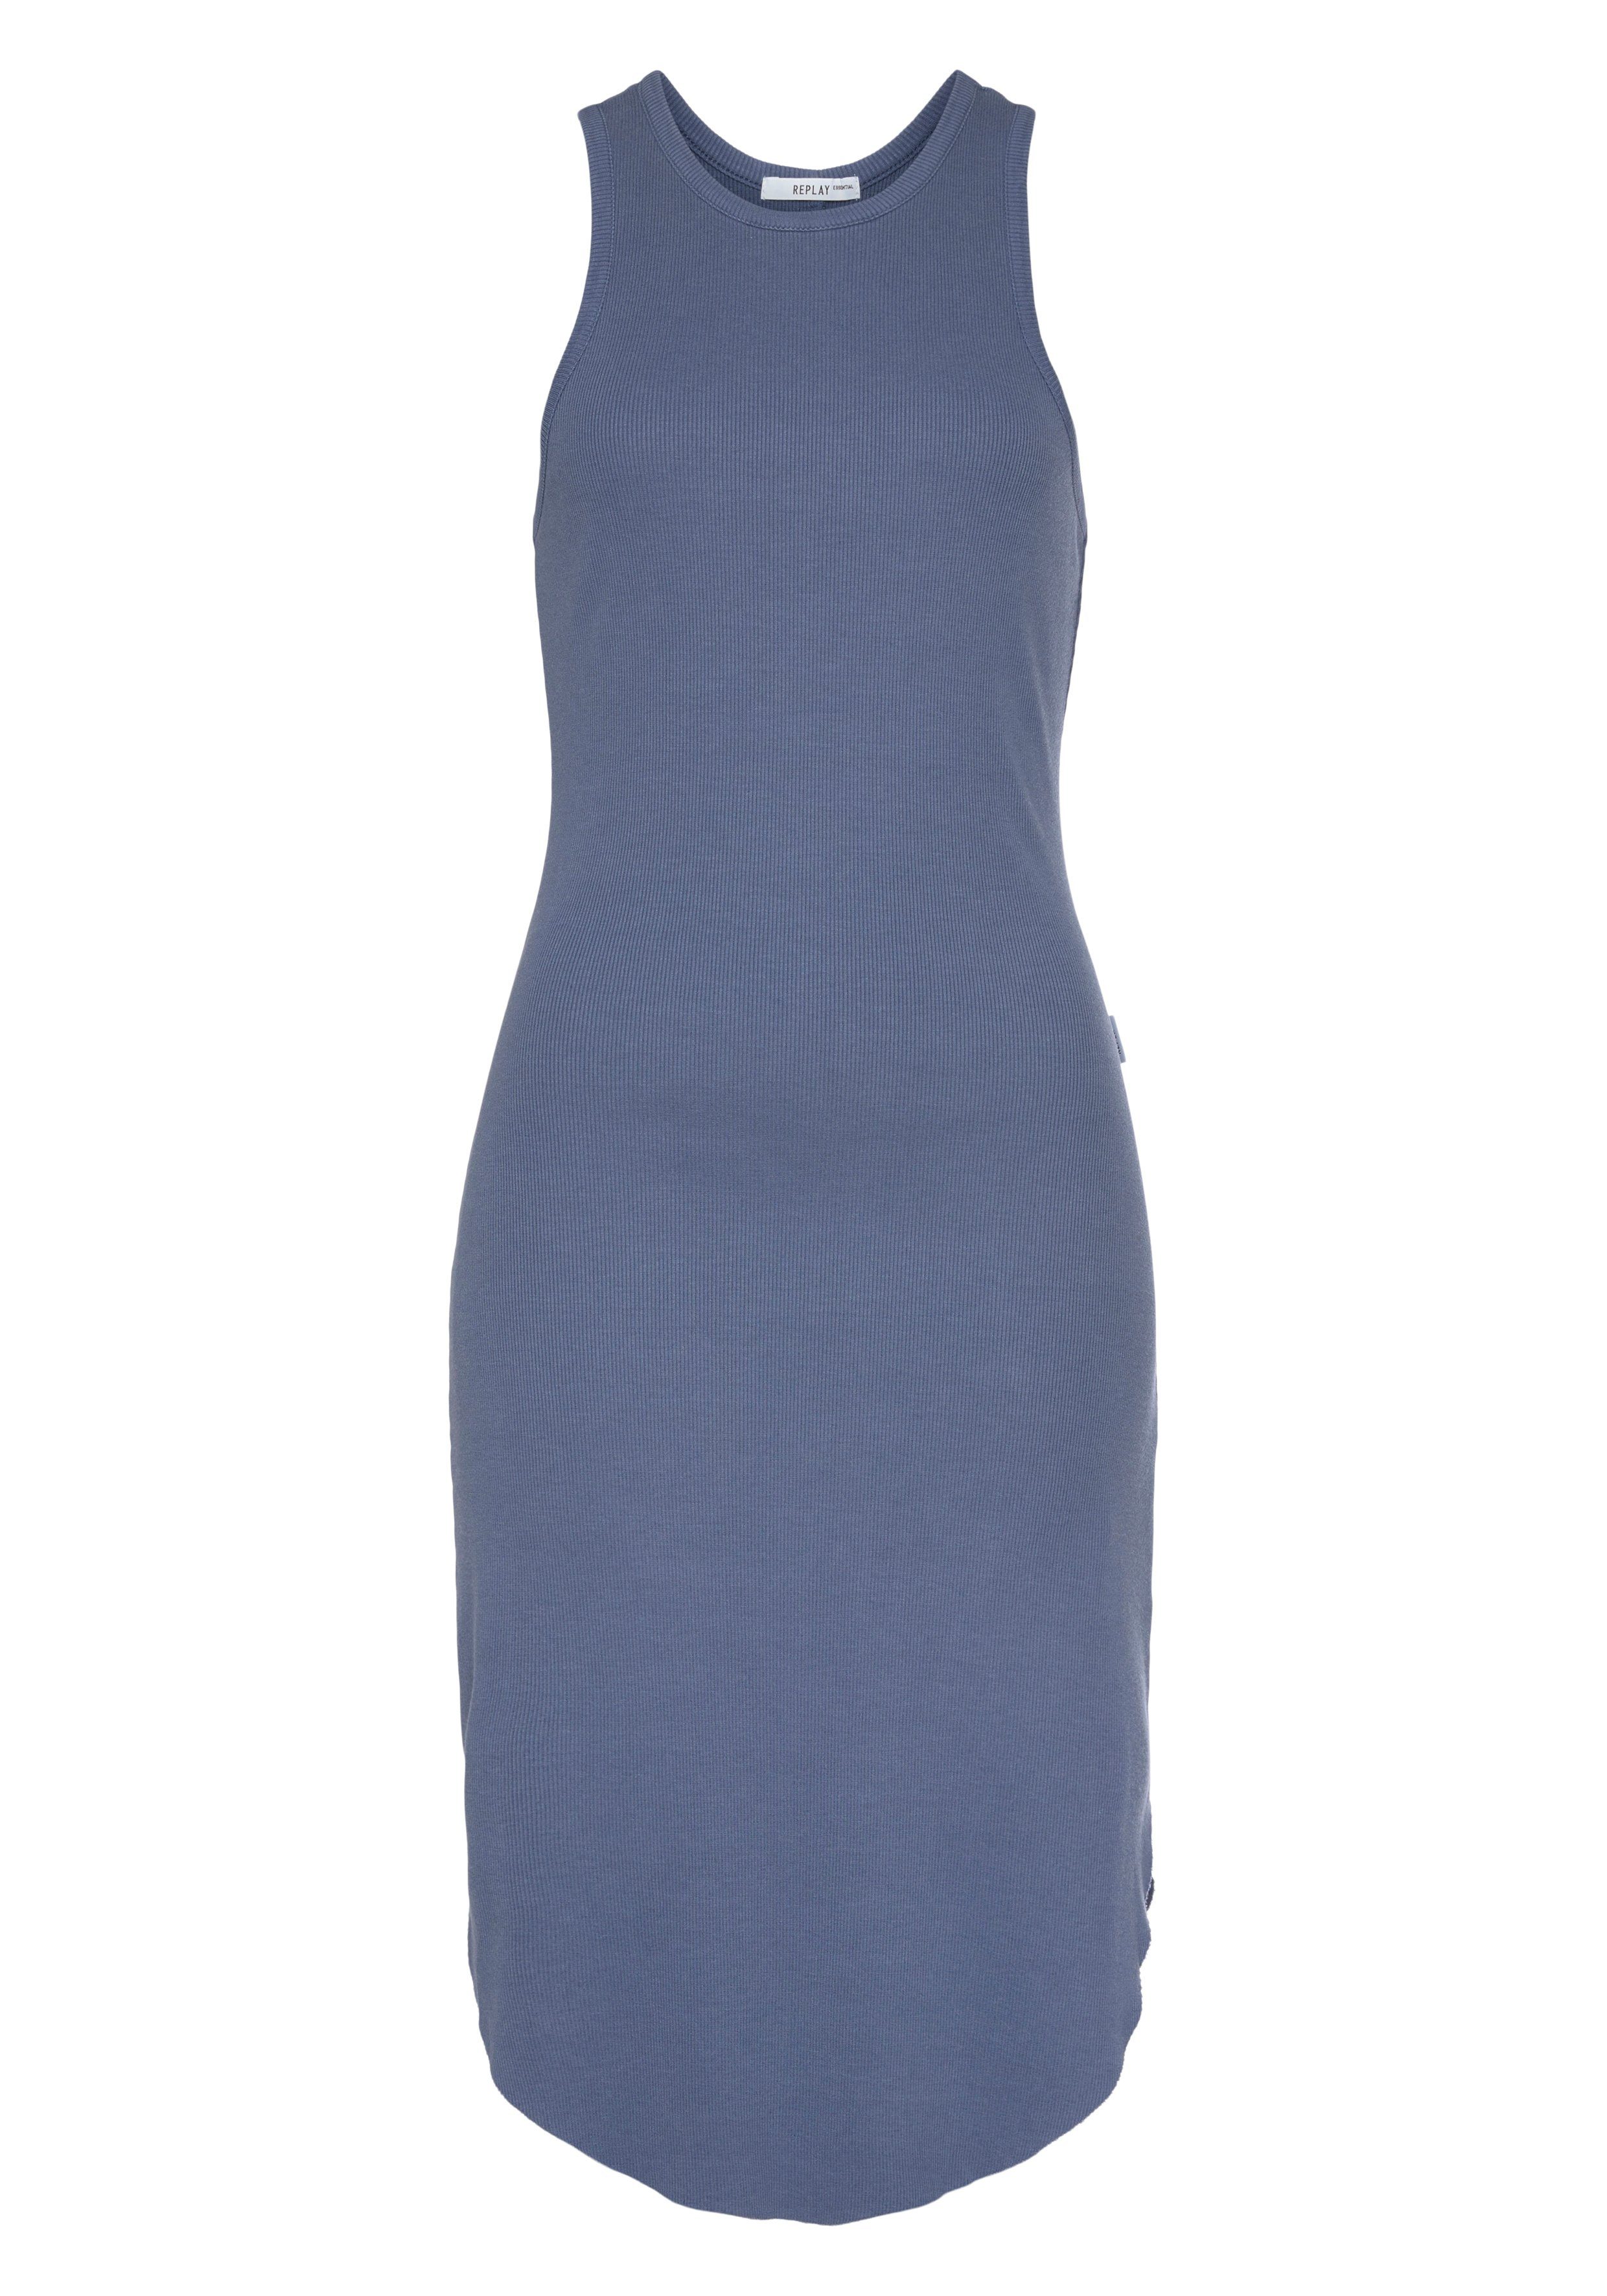 beliebter Artikel Replay Sommerkleid Stretchqualität blue mit Elasthan